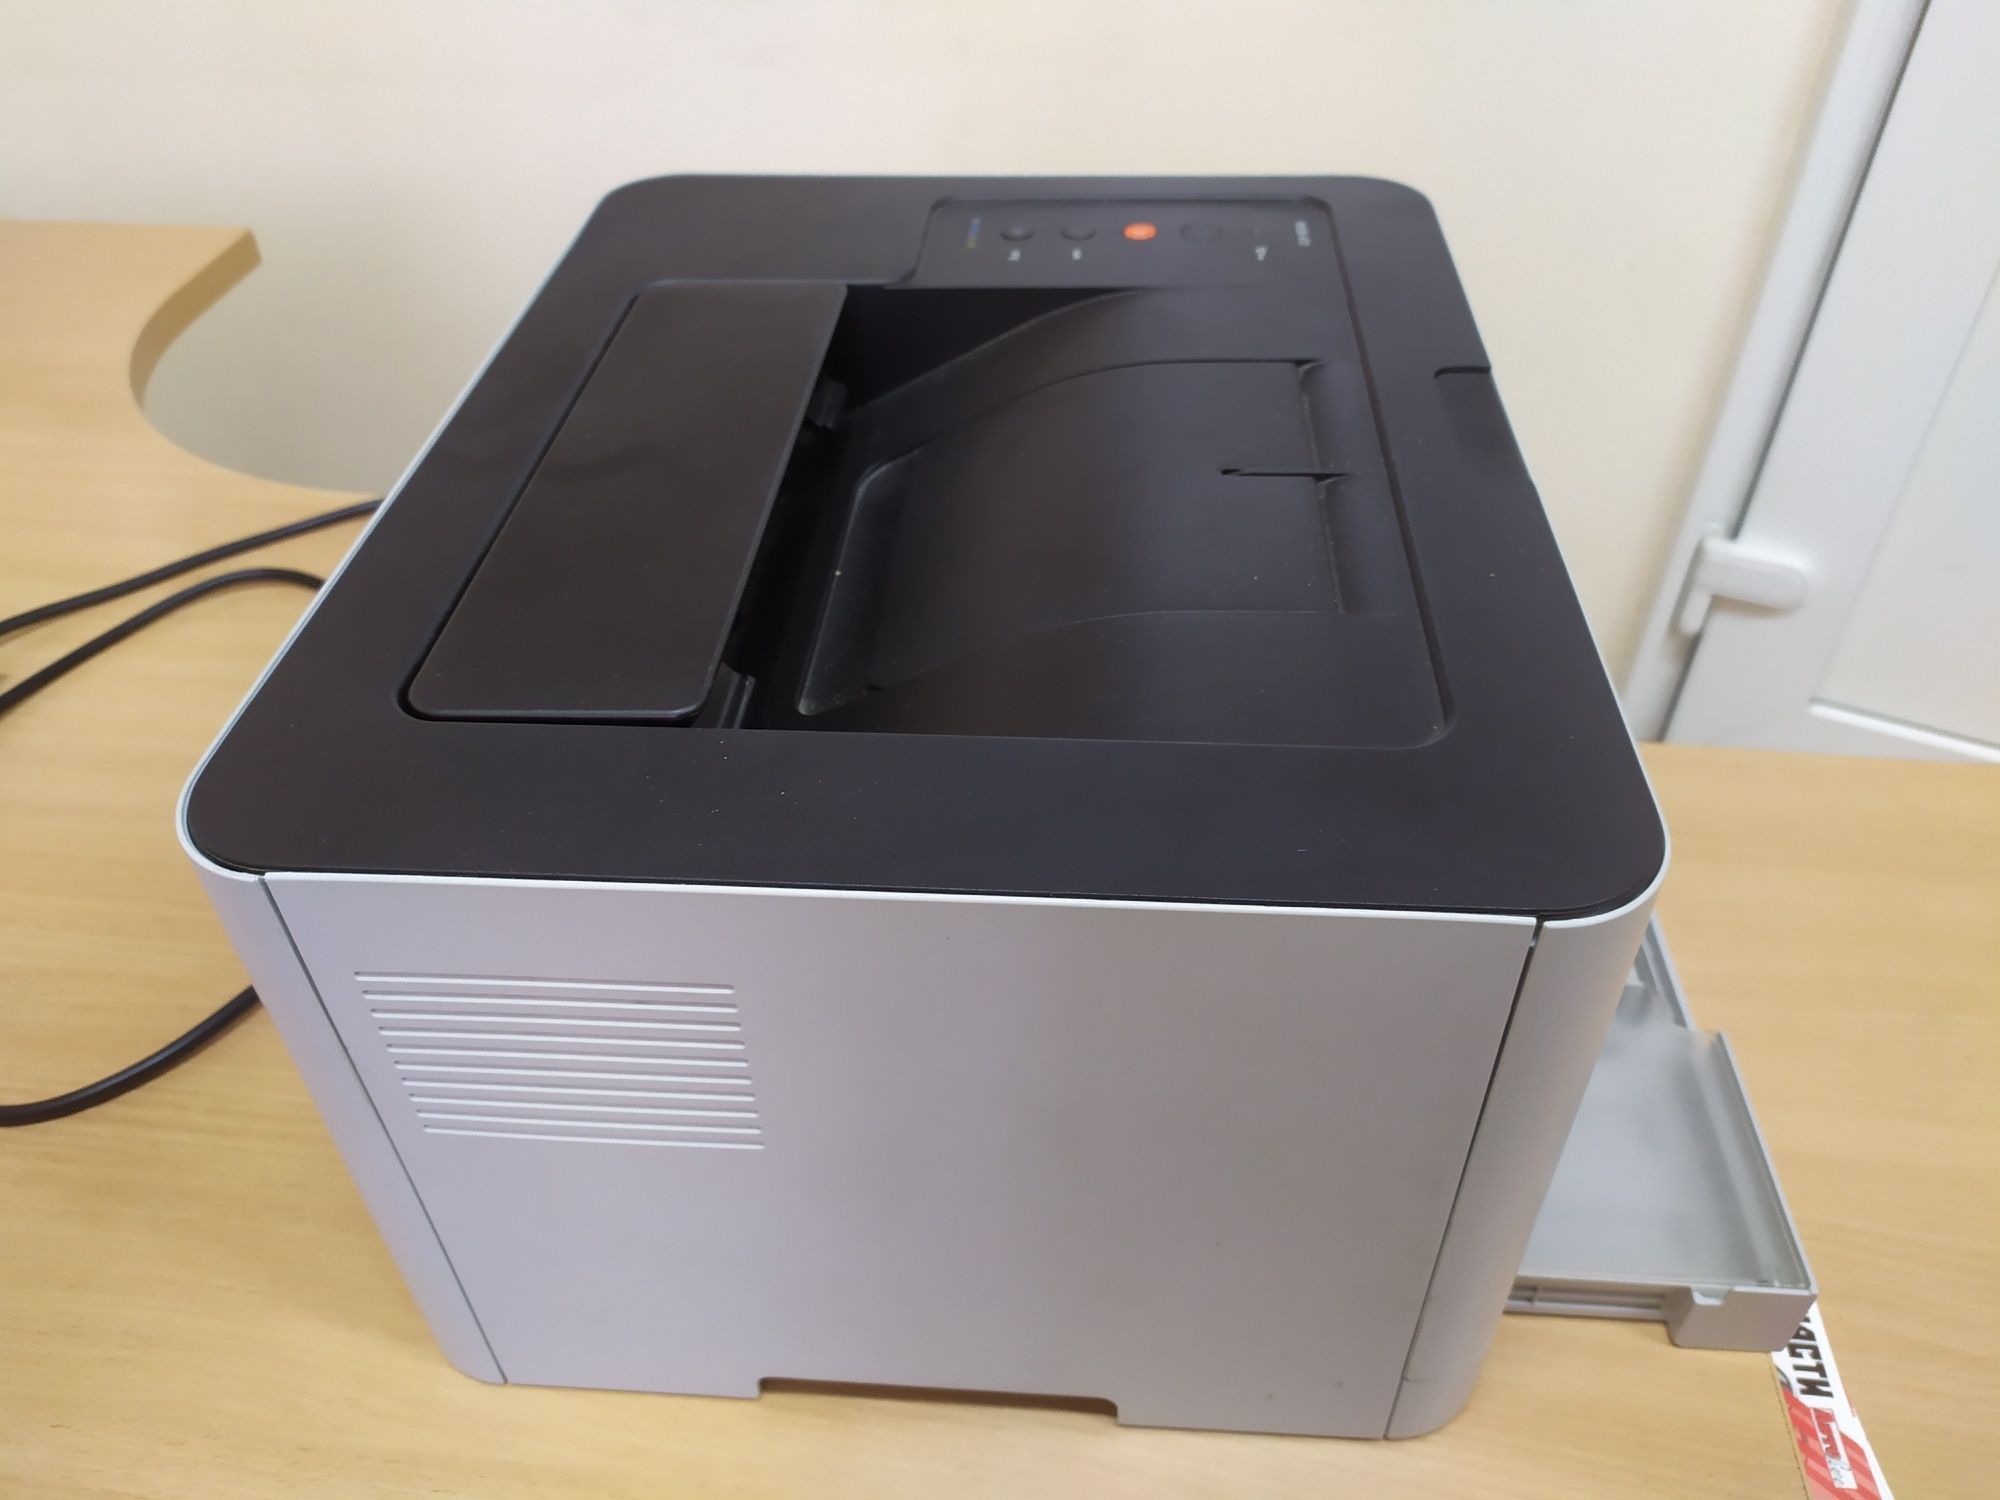 Принтер лазерный цветной Samsung CLP  365W как новый!